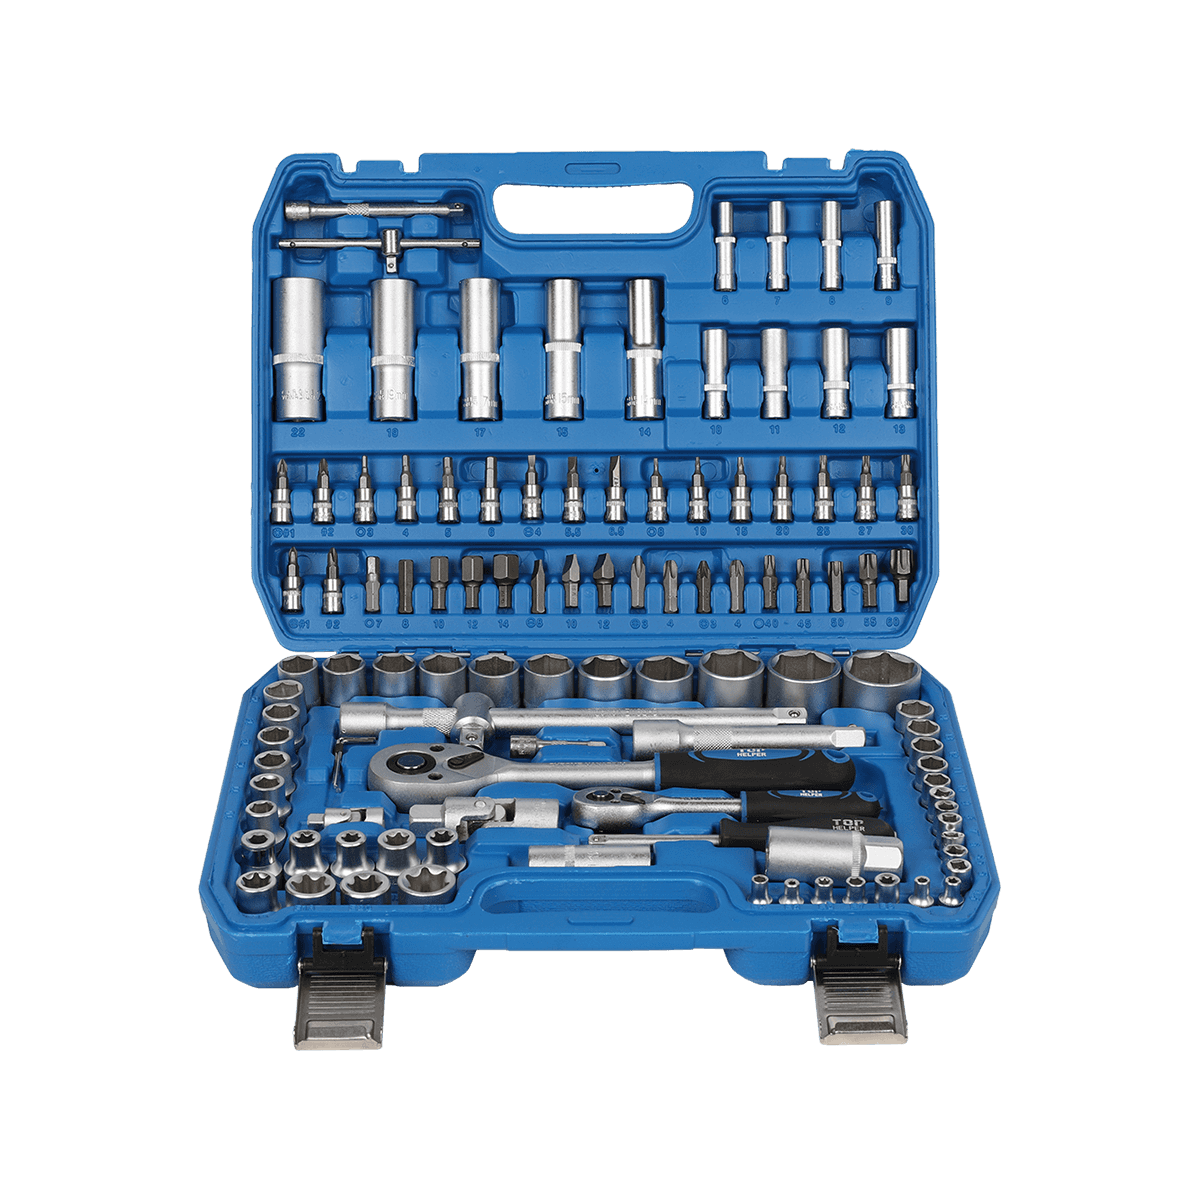 108 Pezzi Elementi di Fissaggio Hardware Set di Utensili Manuali per Riparazione Mobile Set di Strumenti per Uso Domestico Generale